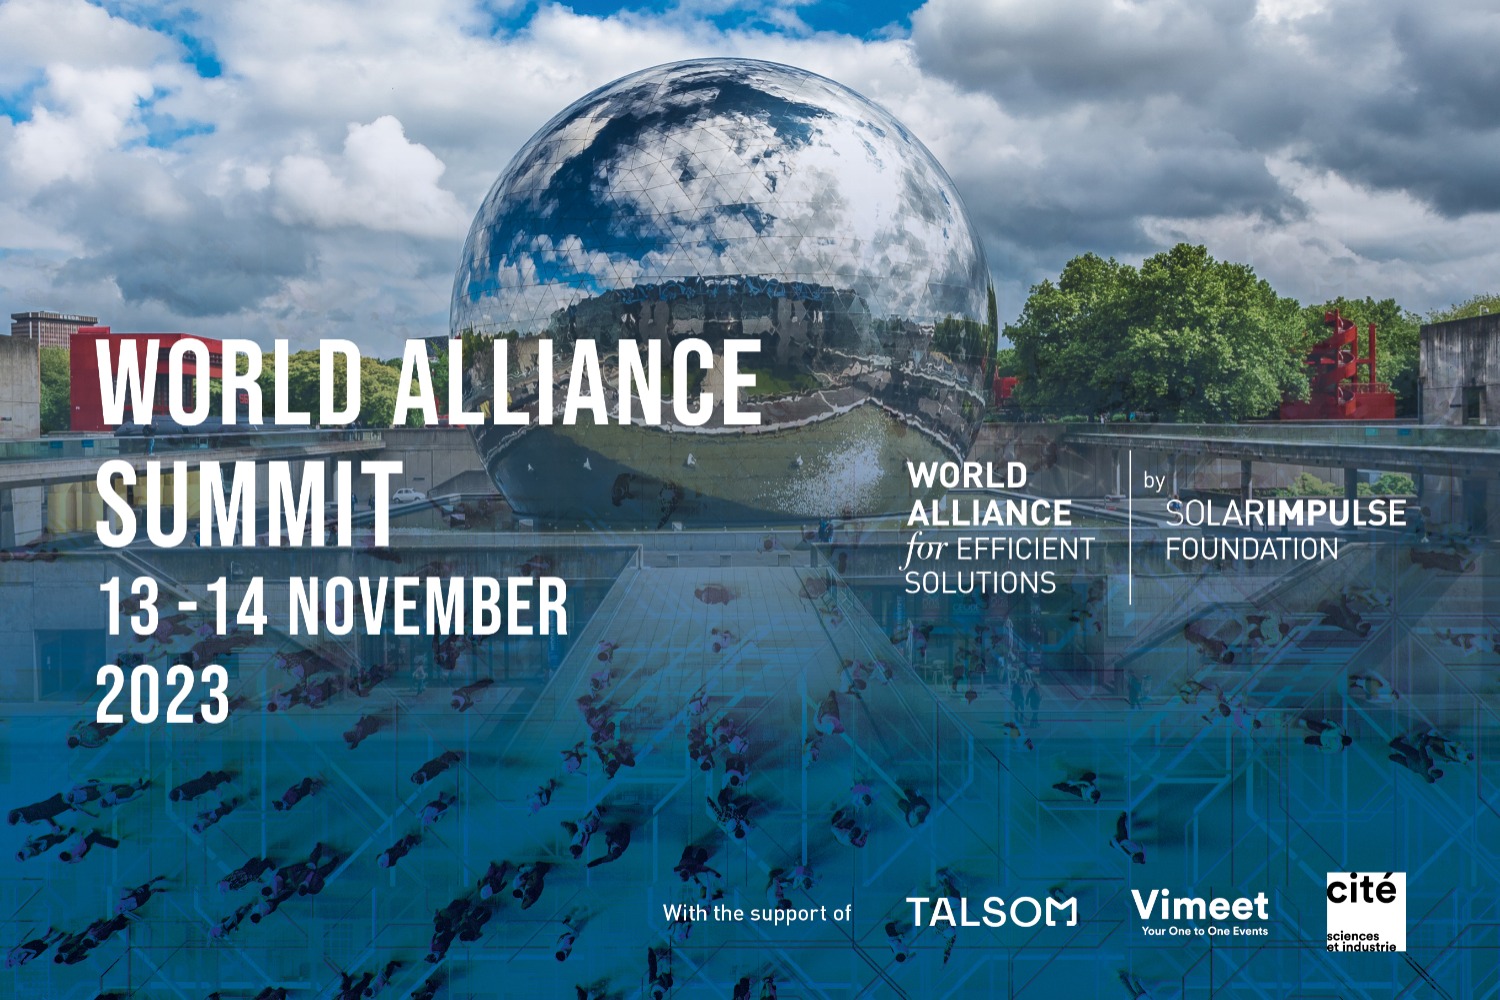 Sommet de l'Alliance mondiale pour des solutions efficaces